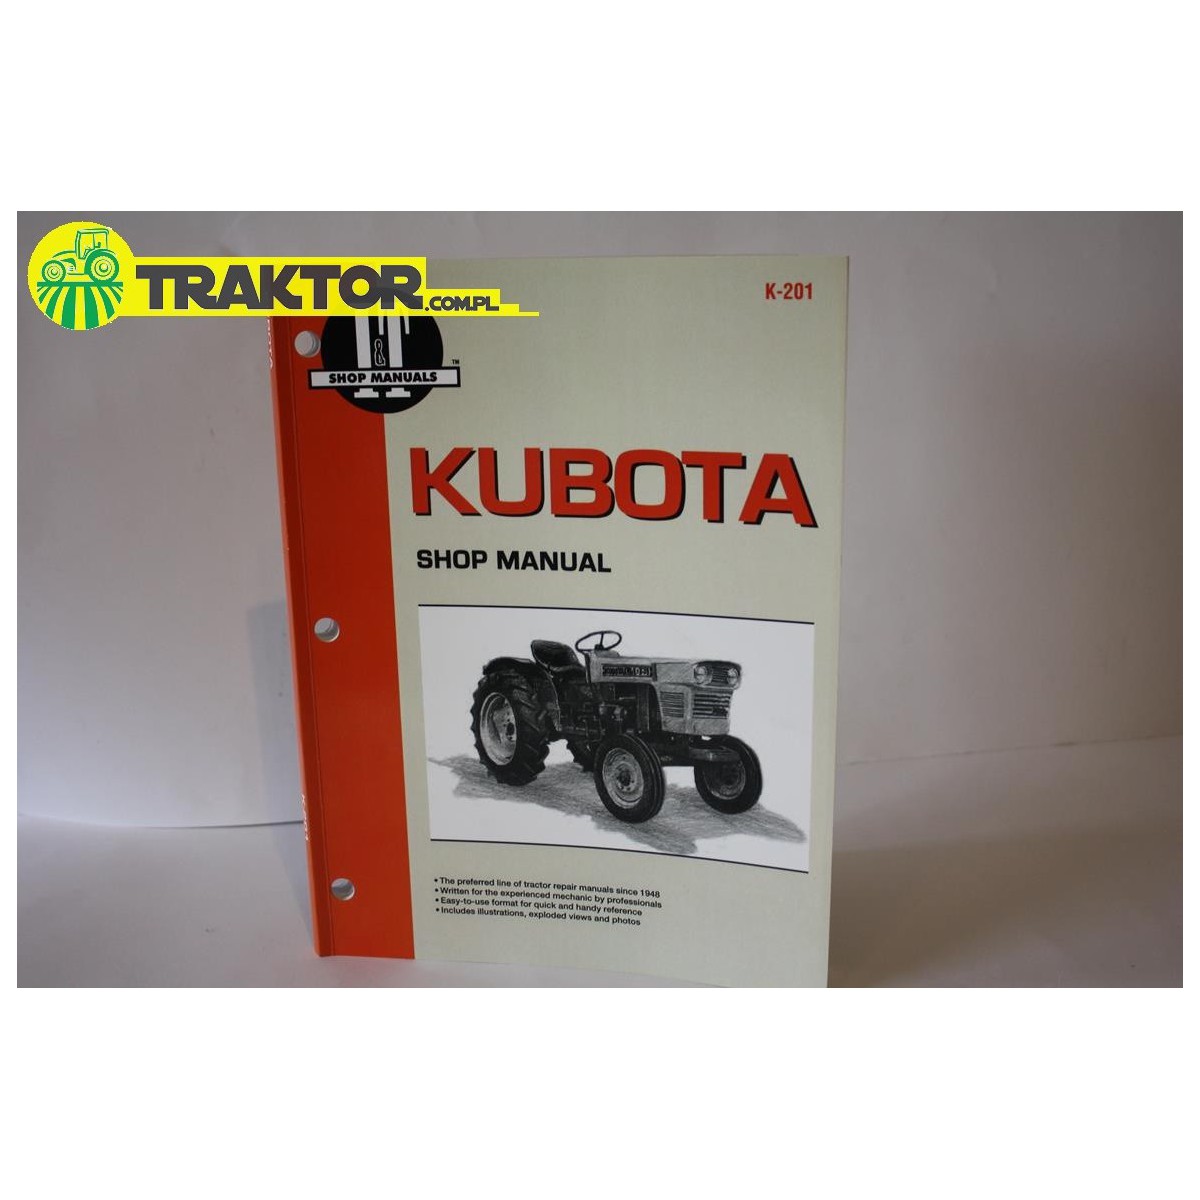 Workshop Manual Kubota L175 L185 L210 L225 L235 L245 L275 L285 L295 L305 L345